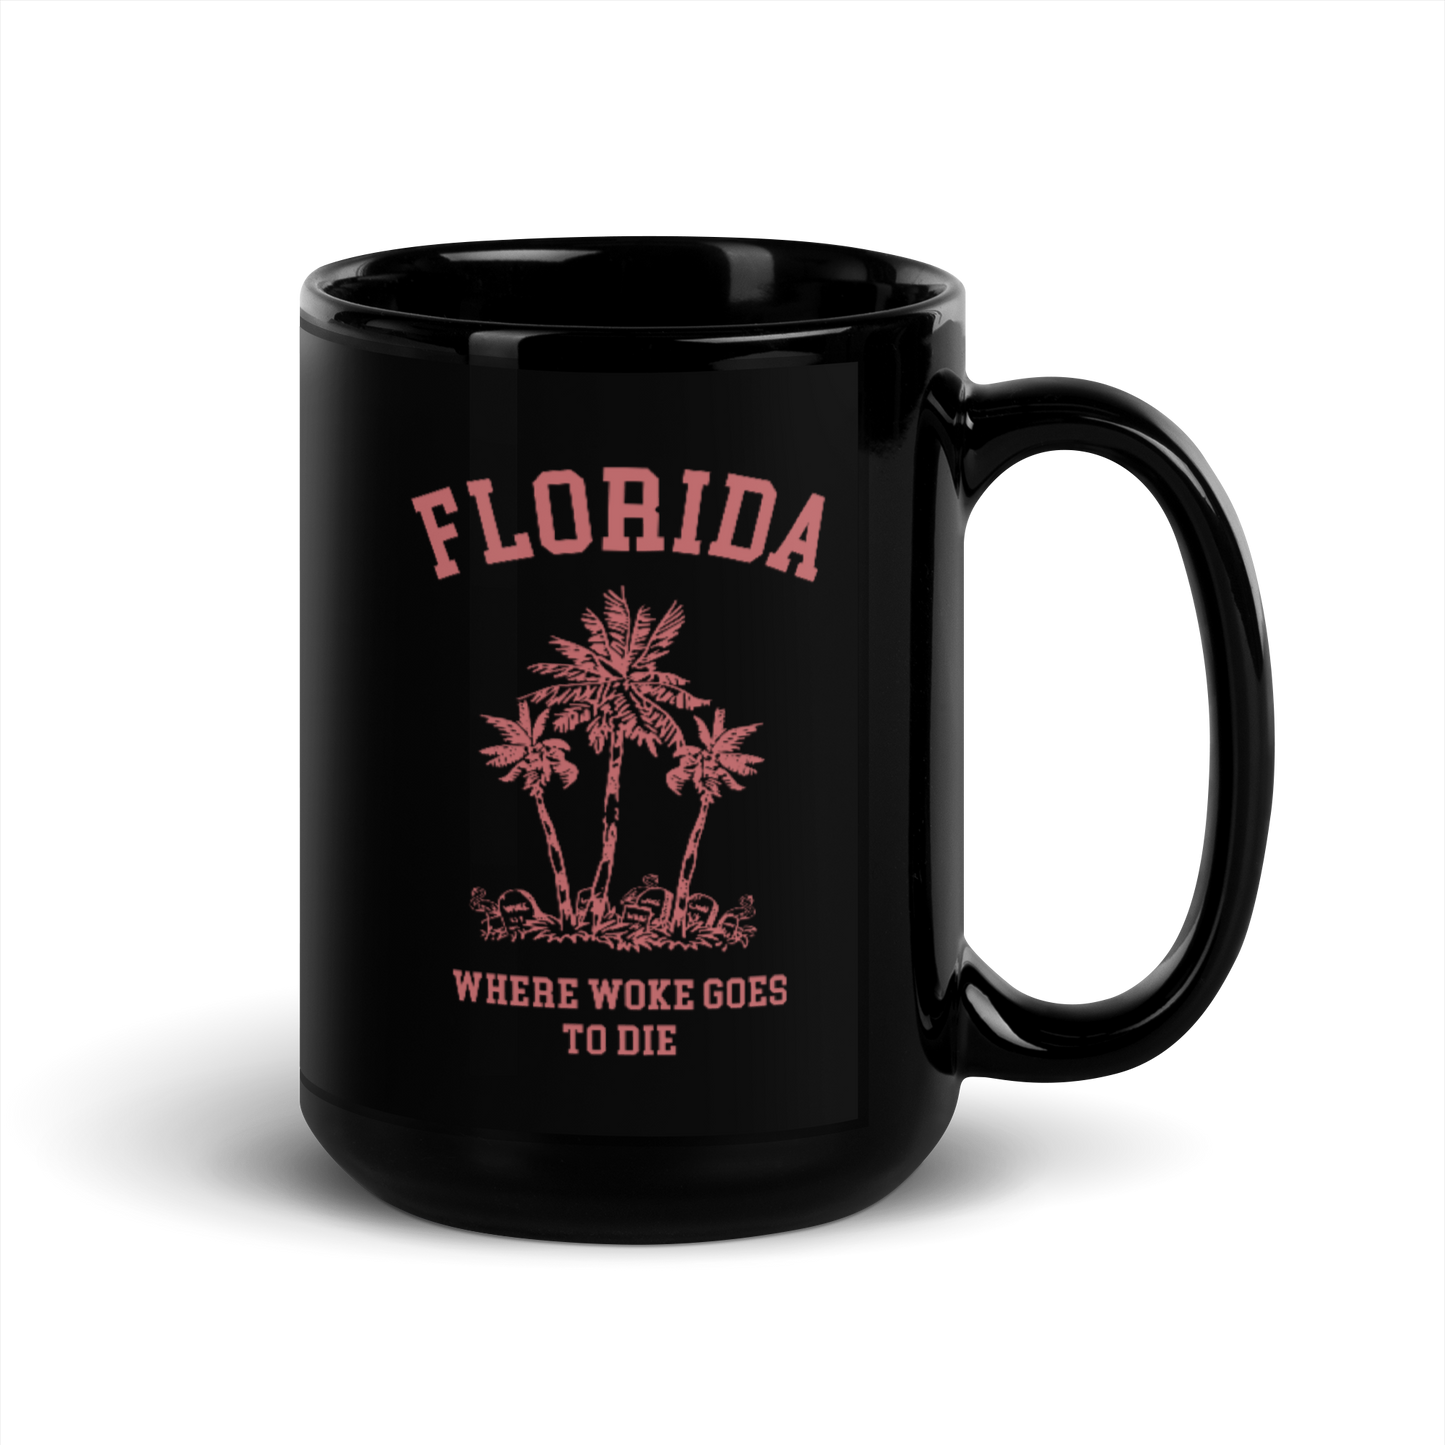 Florida - Where Woke Goes To Die Mug